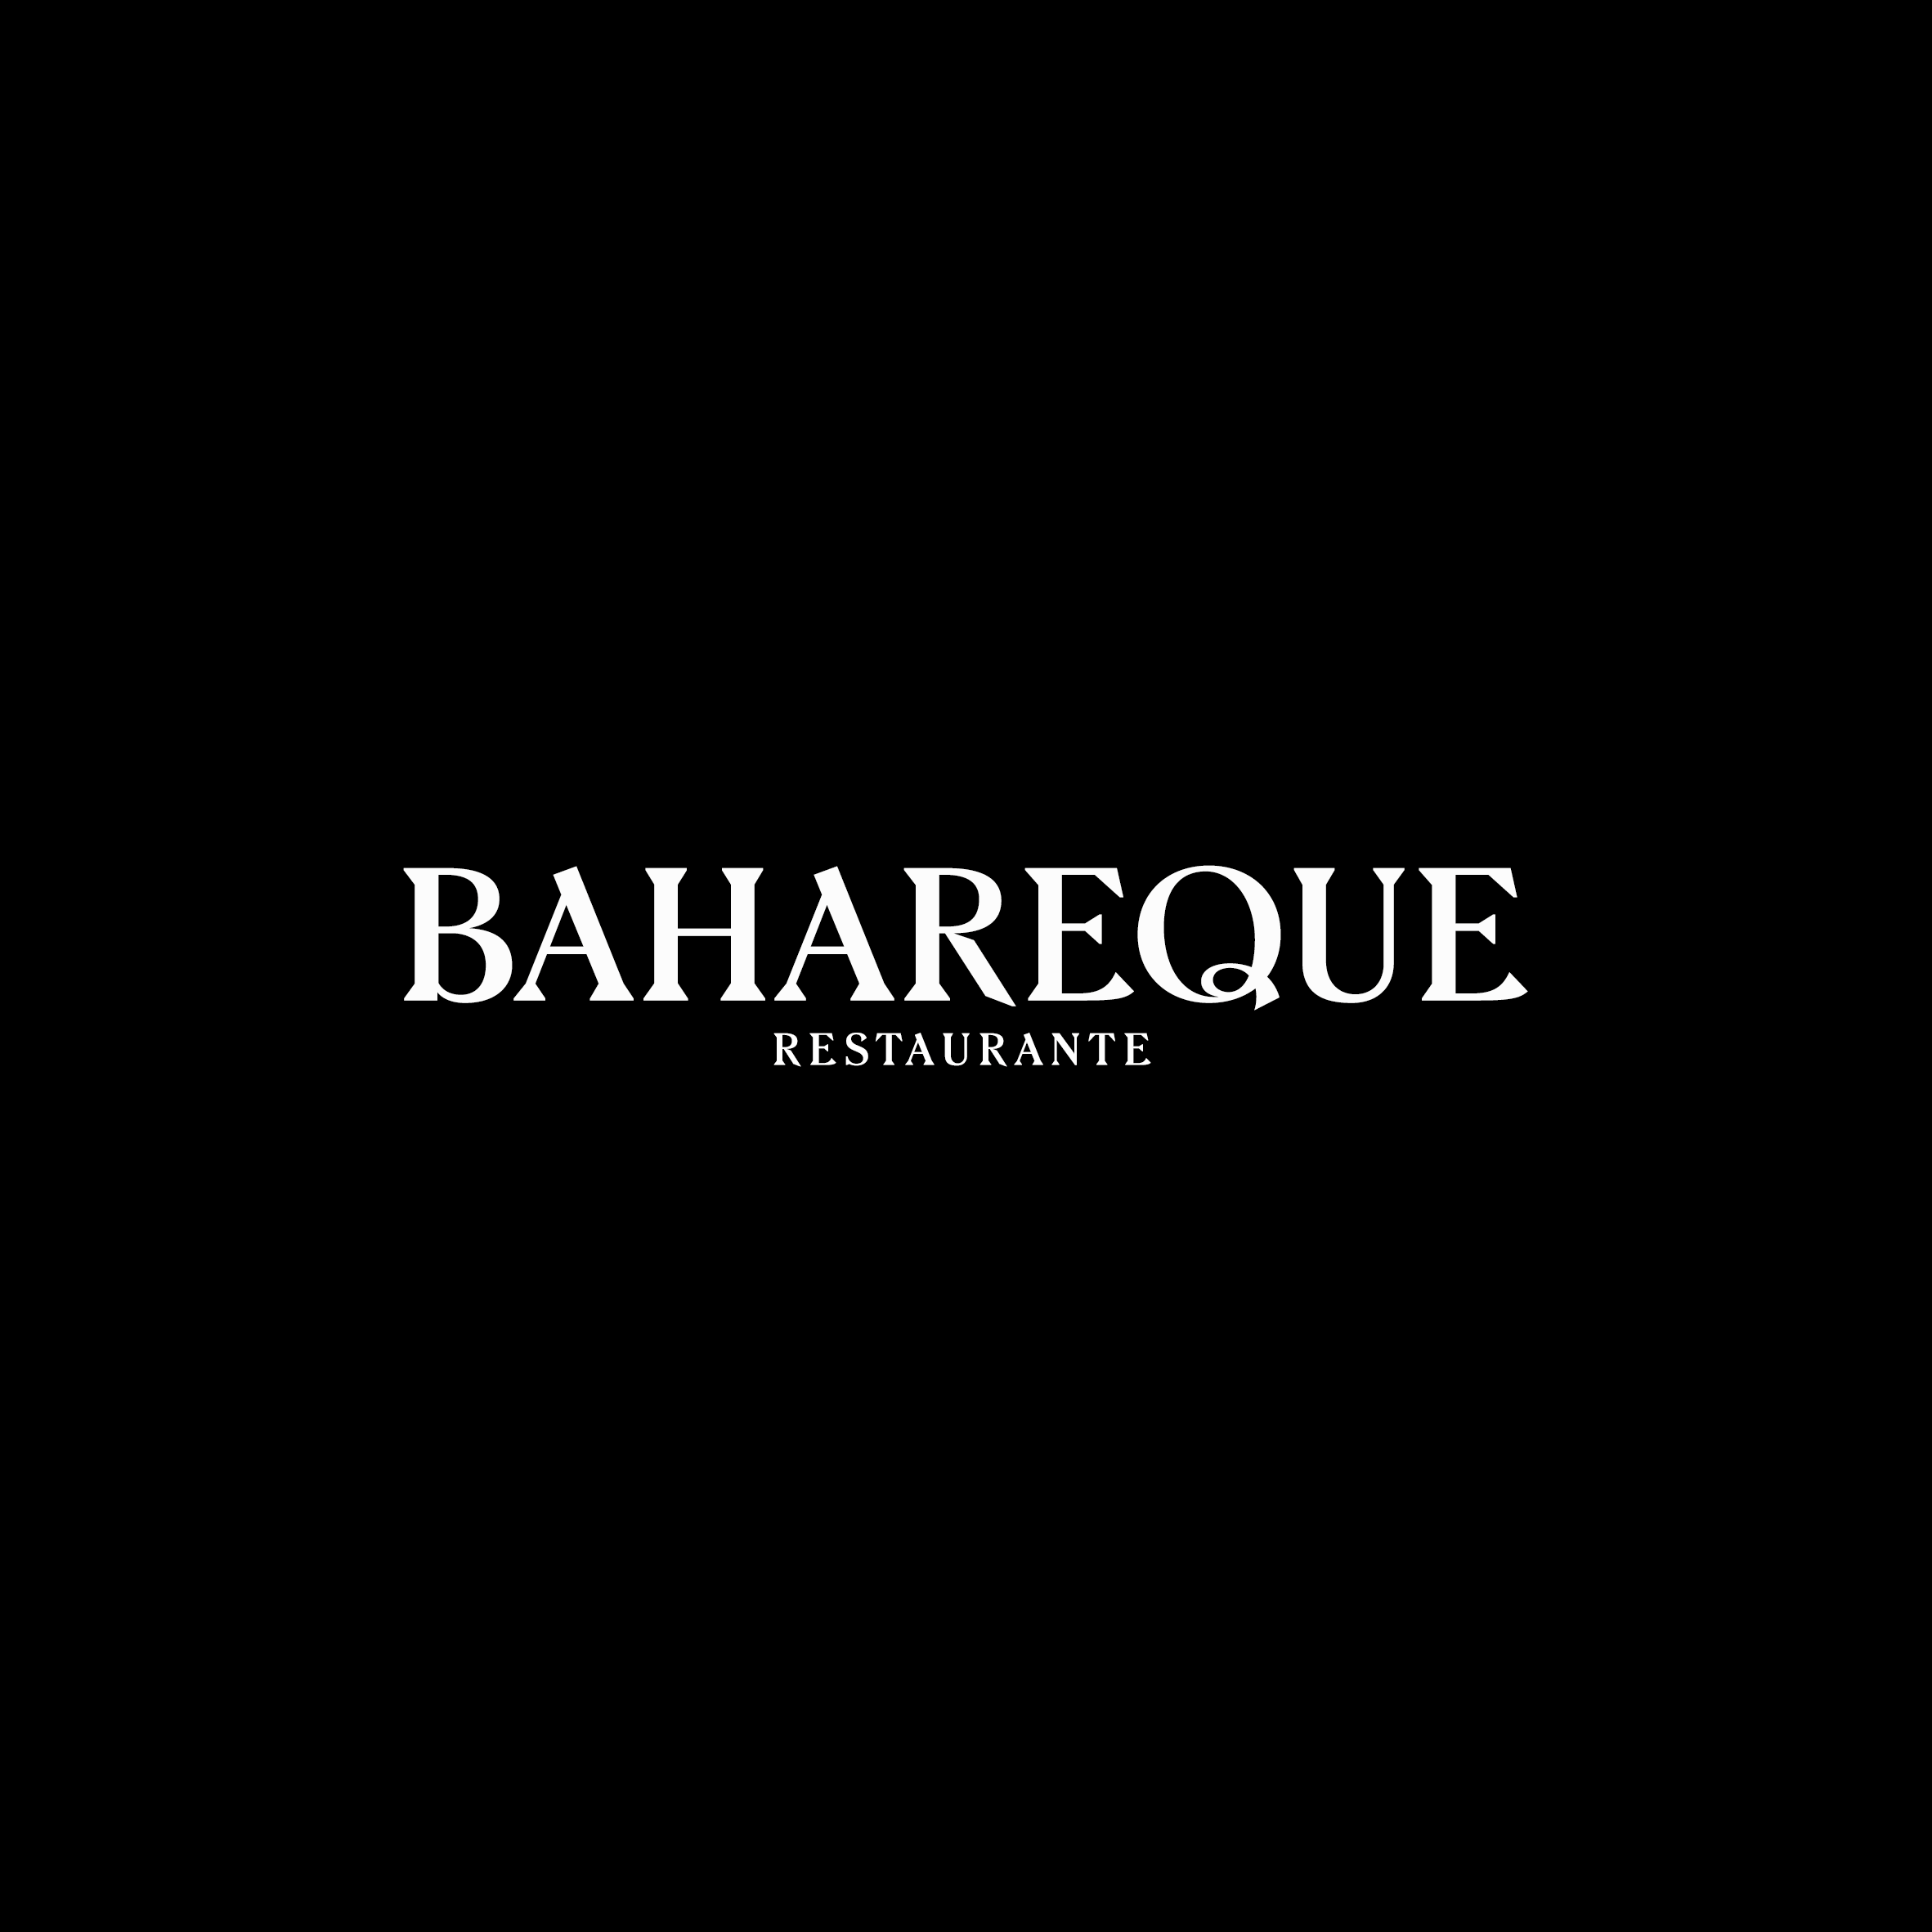 Bahareque